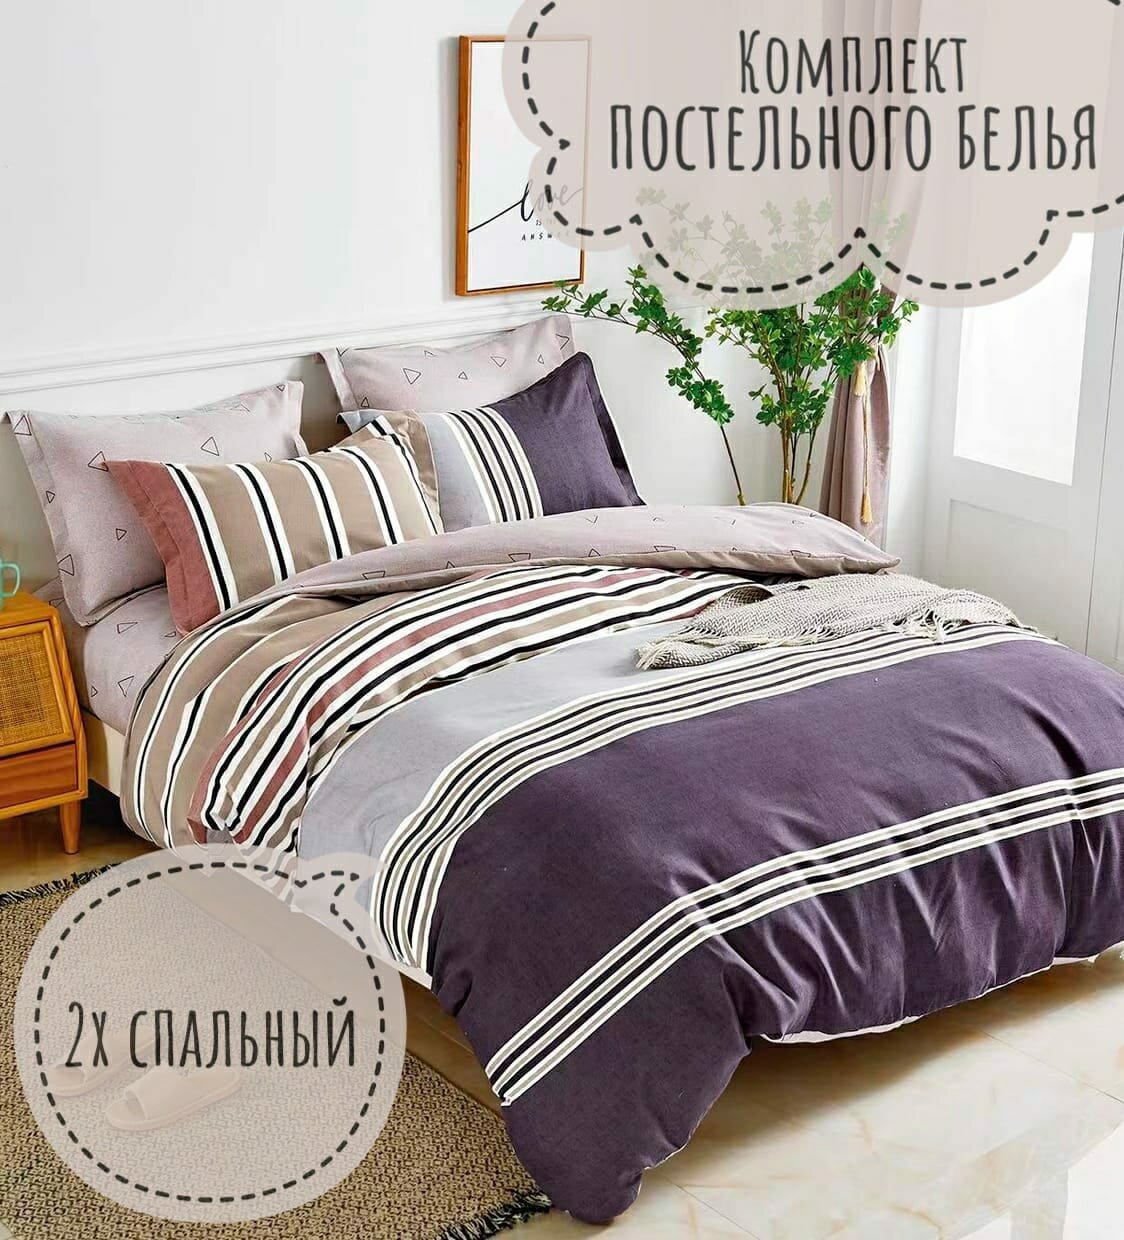 Комплект постельного белья CANDIE'S, Сатин люкс, 2-х спальный, наволочки 70x70, 50x70